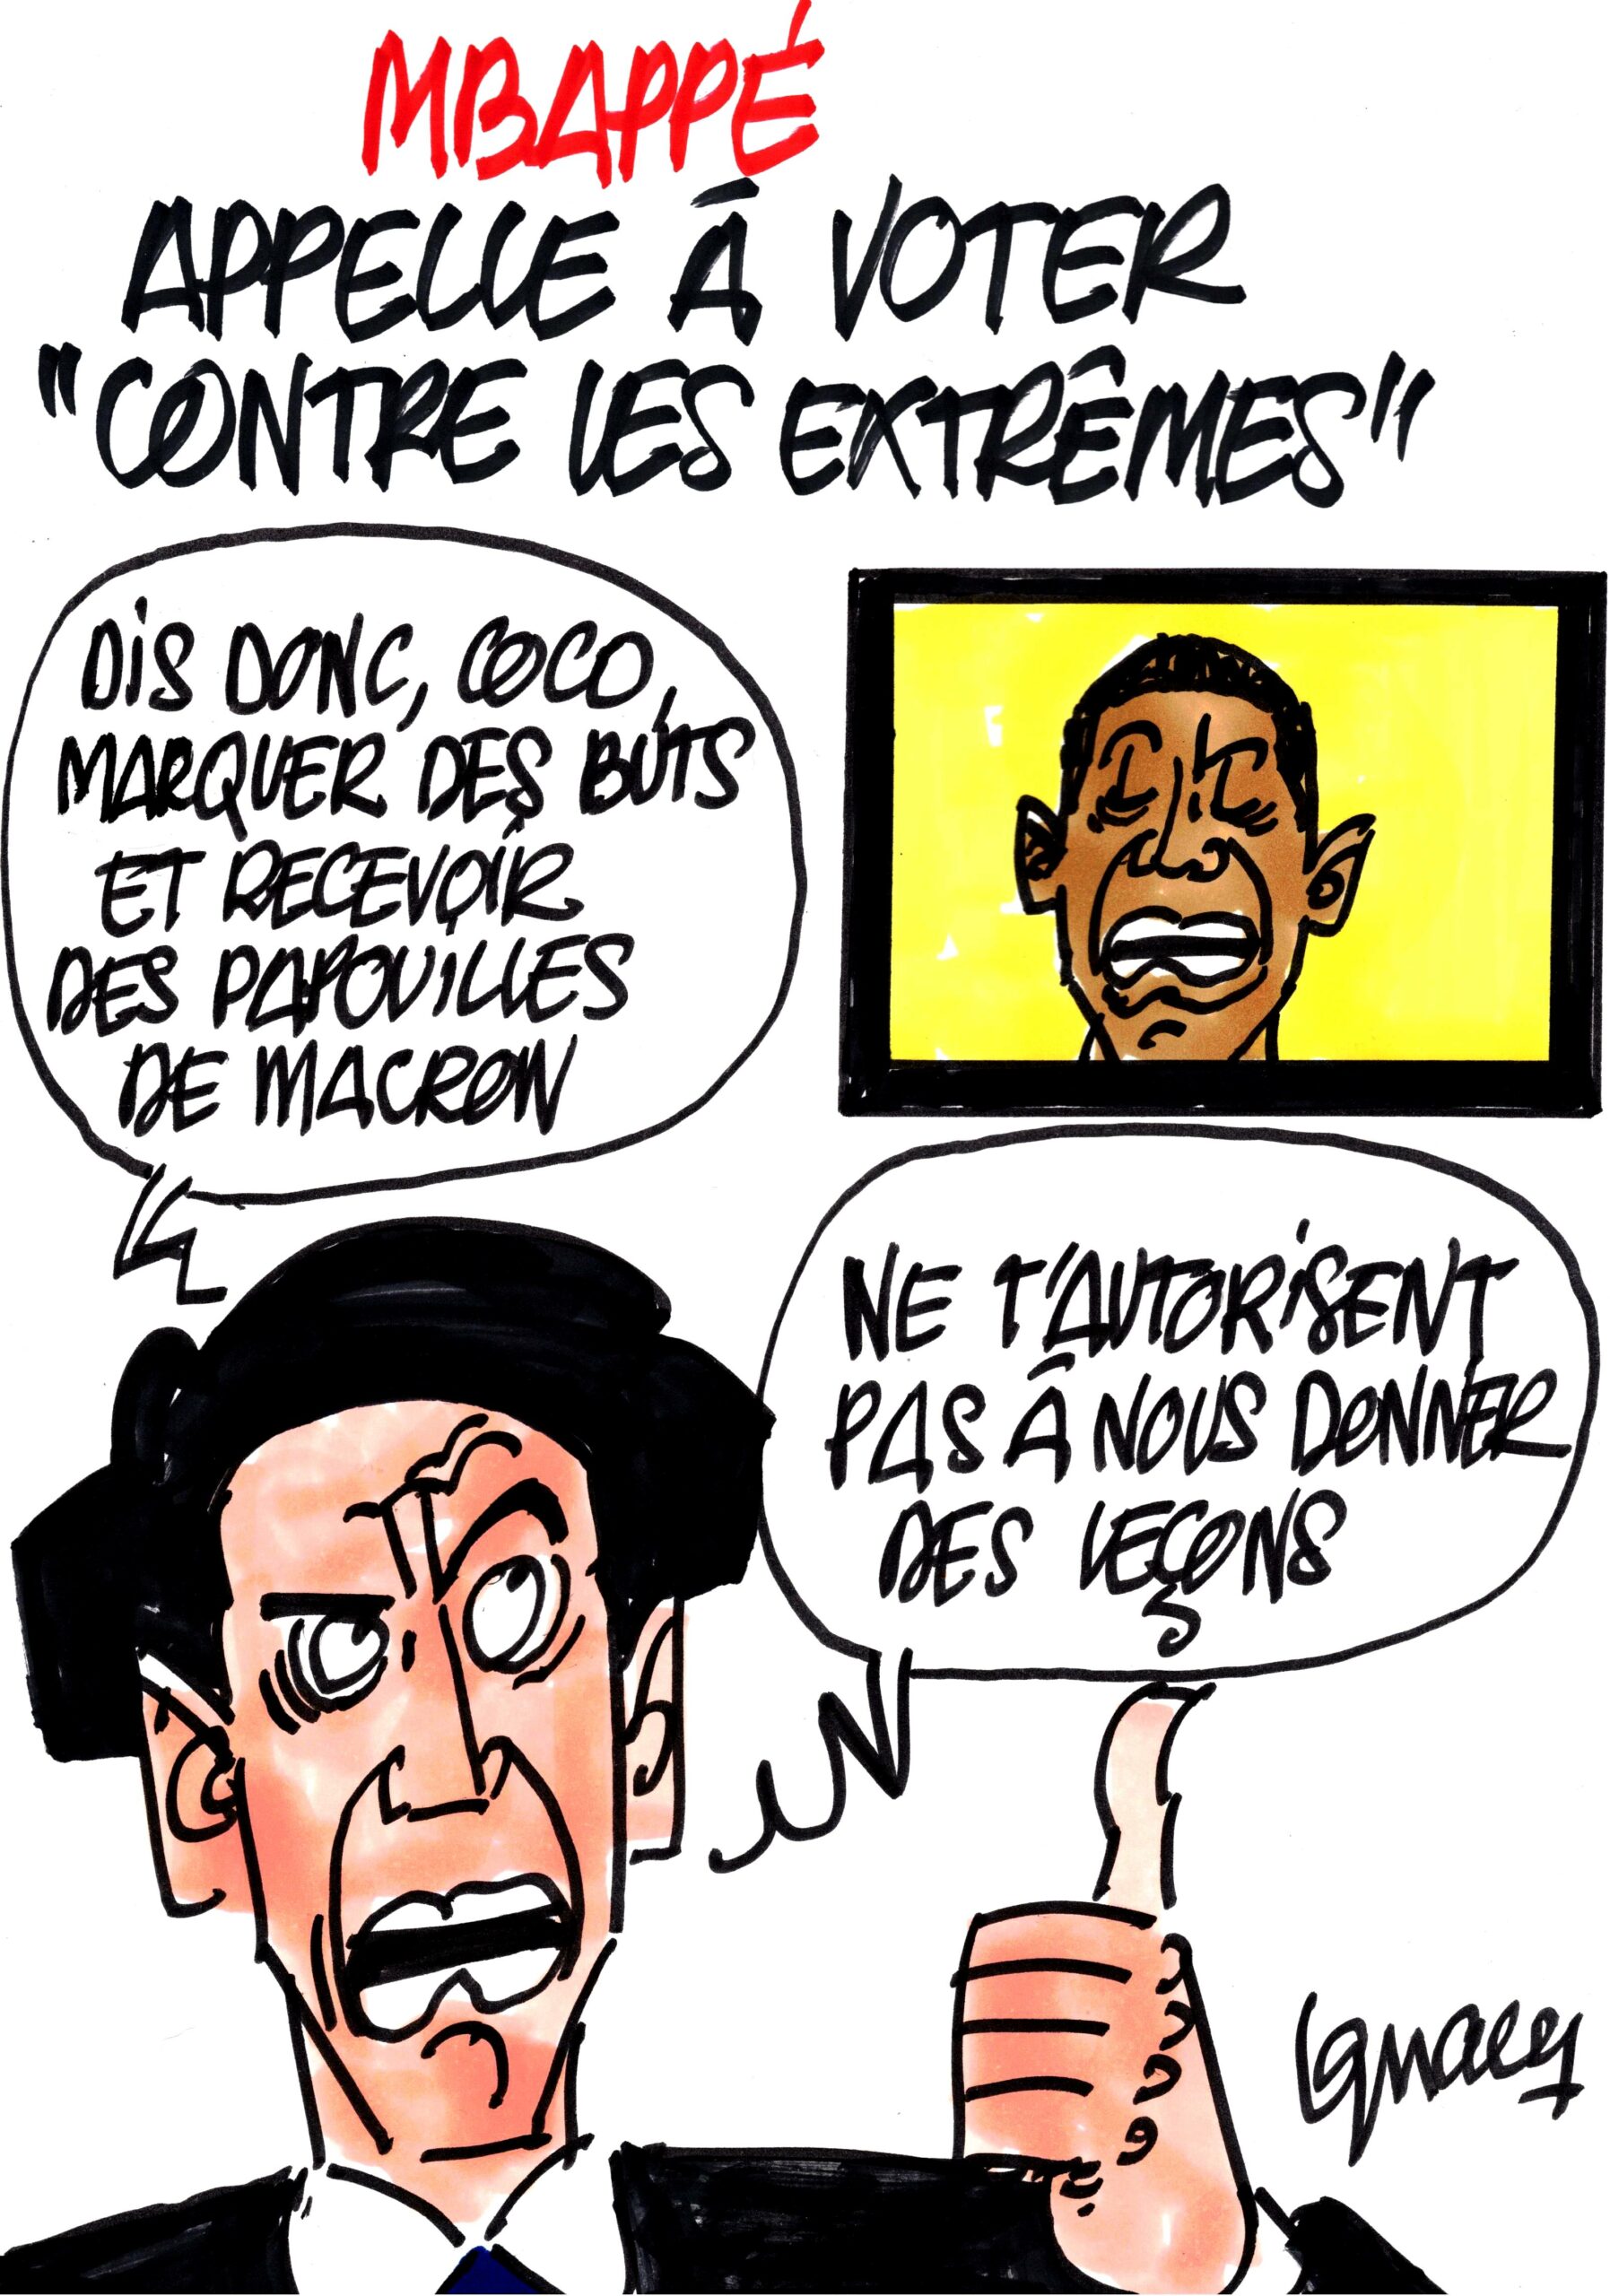 Ignace - Mbappé "contre les extrêmes"